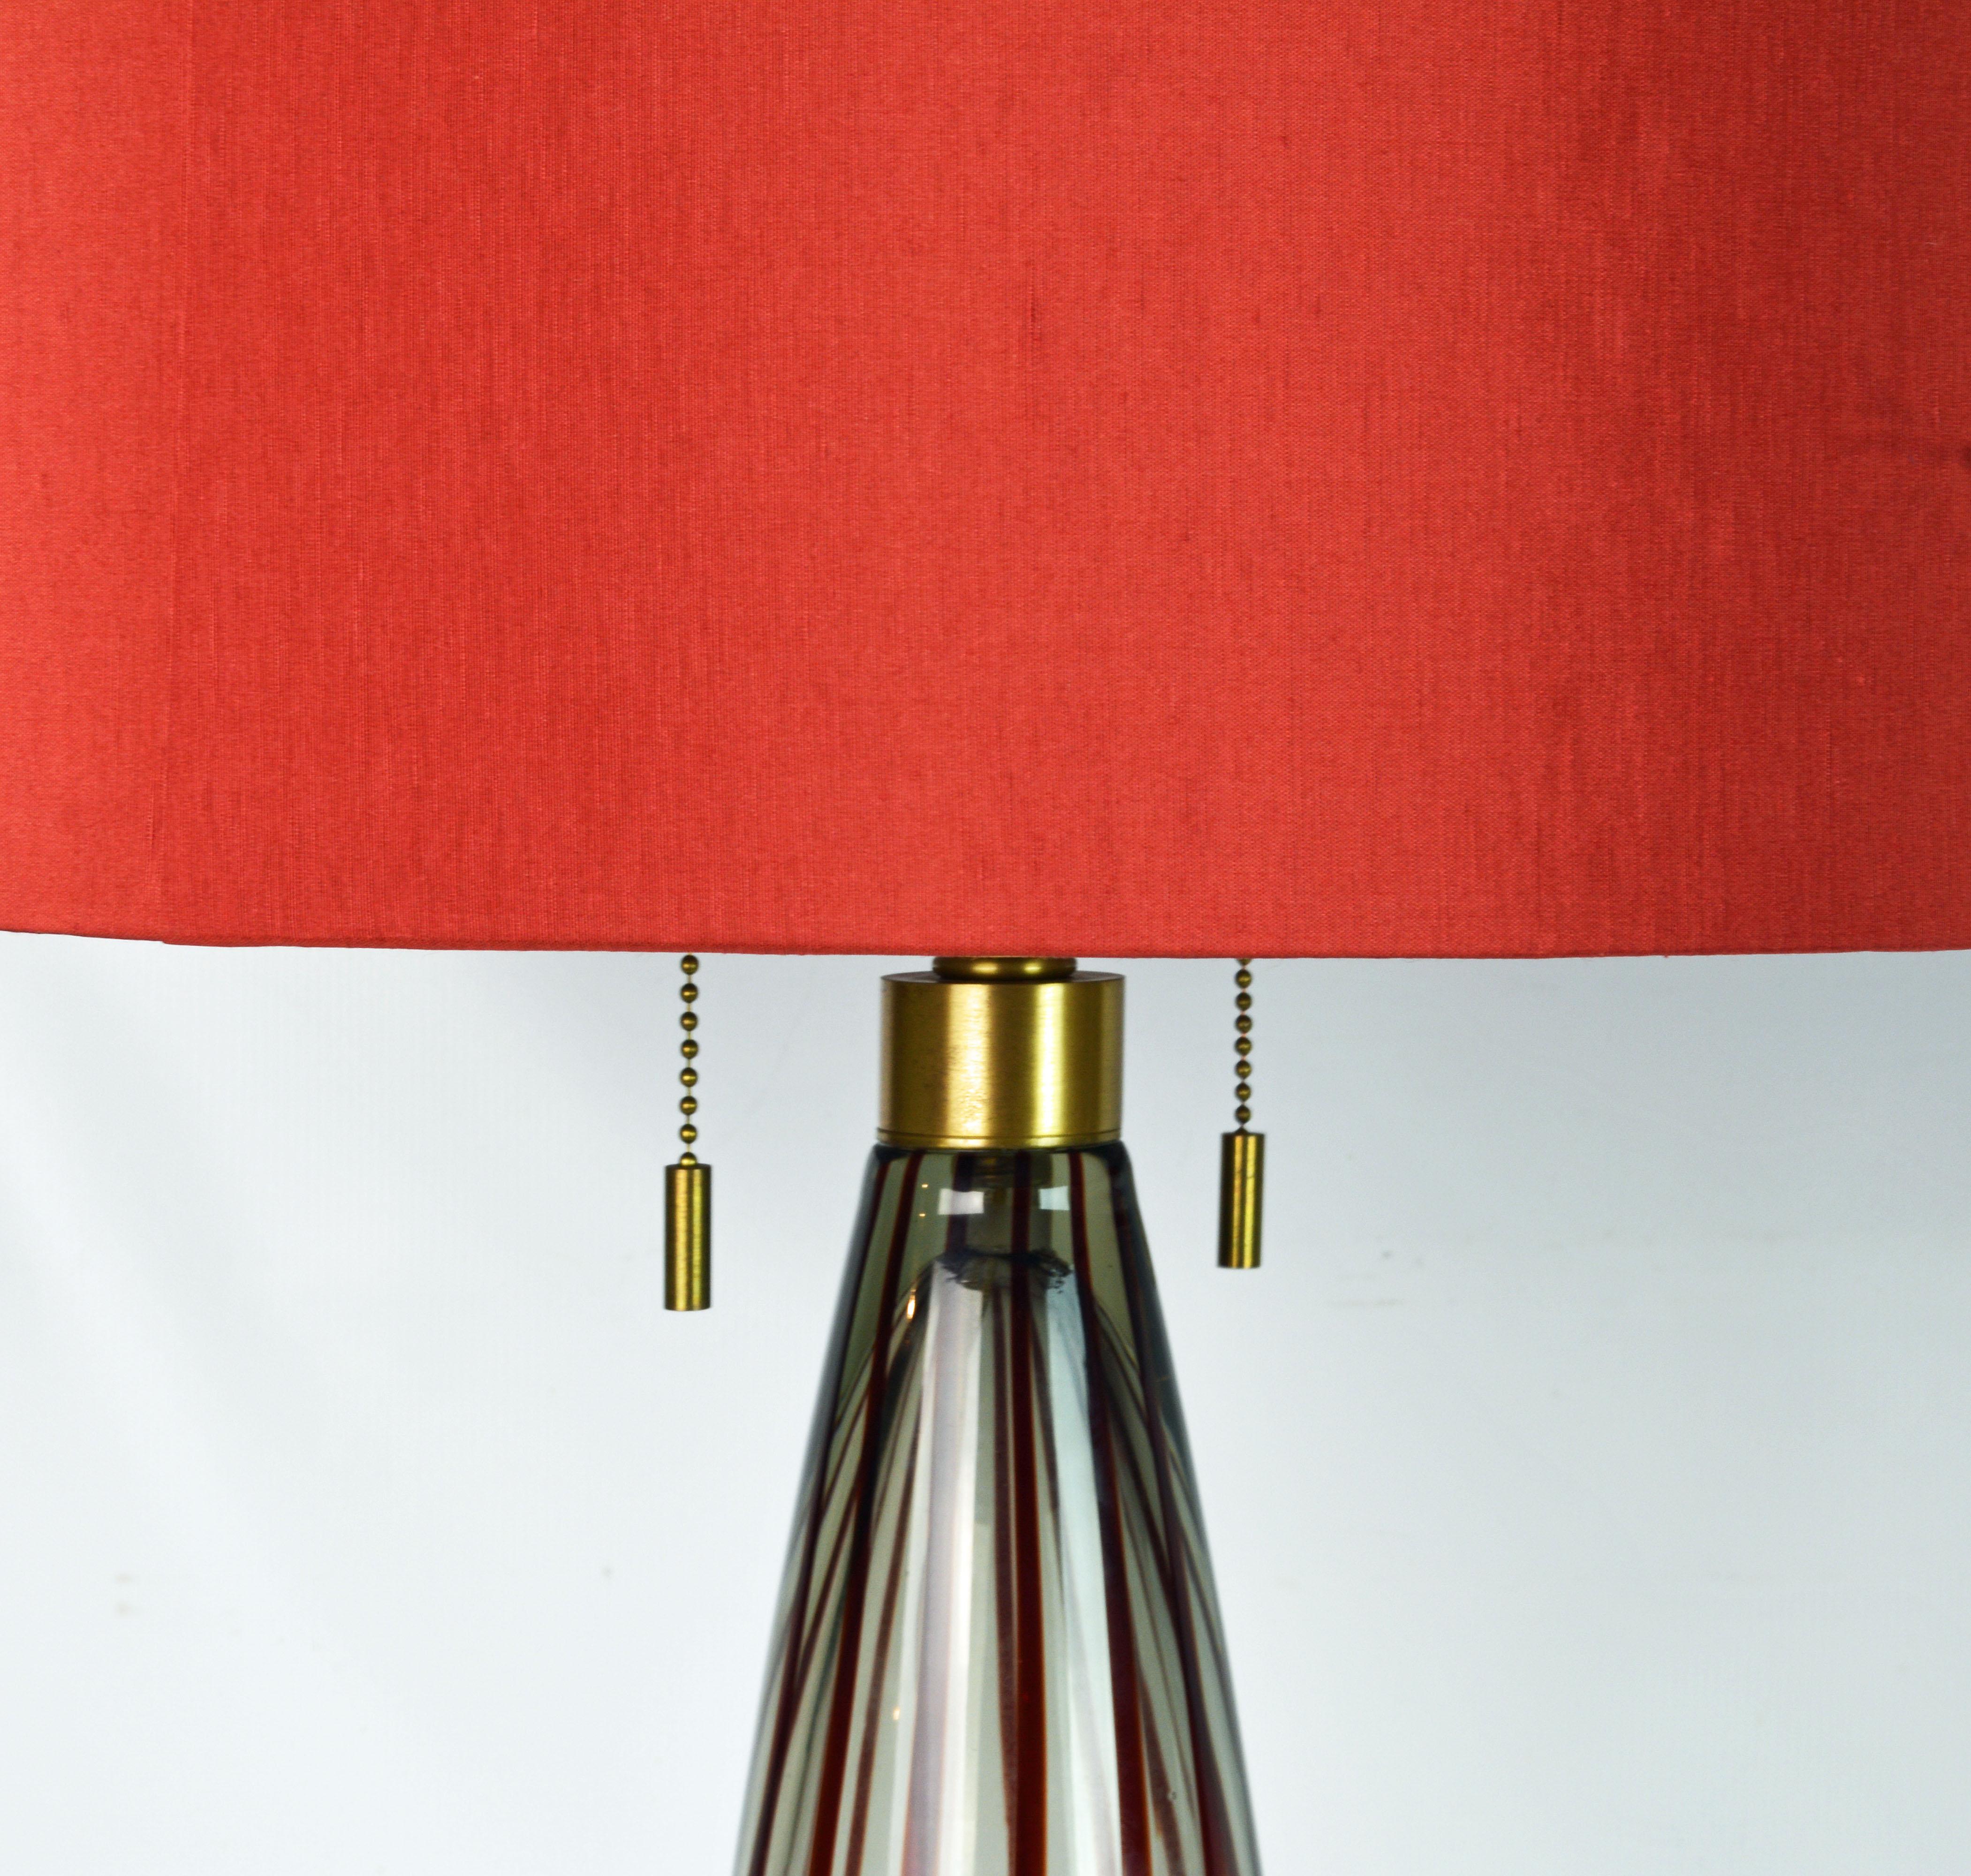 Diese in Murano Italien hergestellten Donghia Lampen sind sehr elegant mit originalen roten Schirmen und rotem Glasabschluss. Donghia ist bekannt für tadelloses Design und Qualität:: wie diese sehr geschmackvollen Lampen beweisen. Sie sind in der